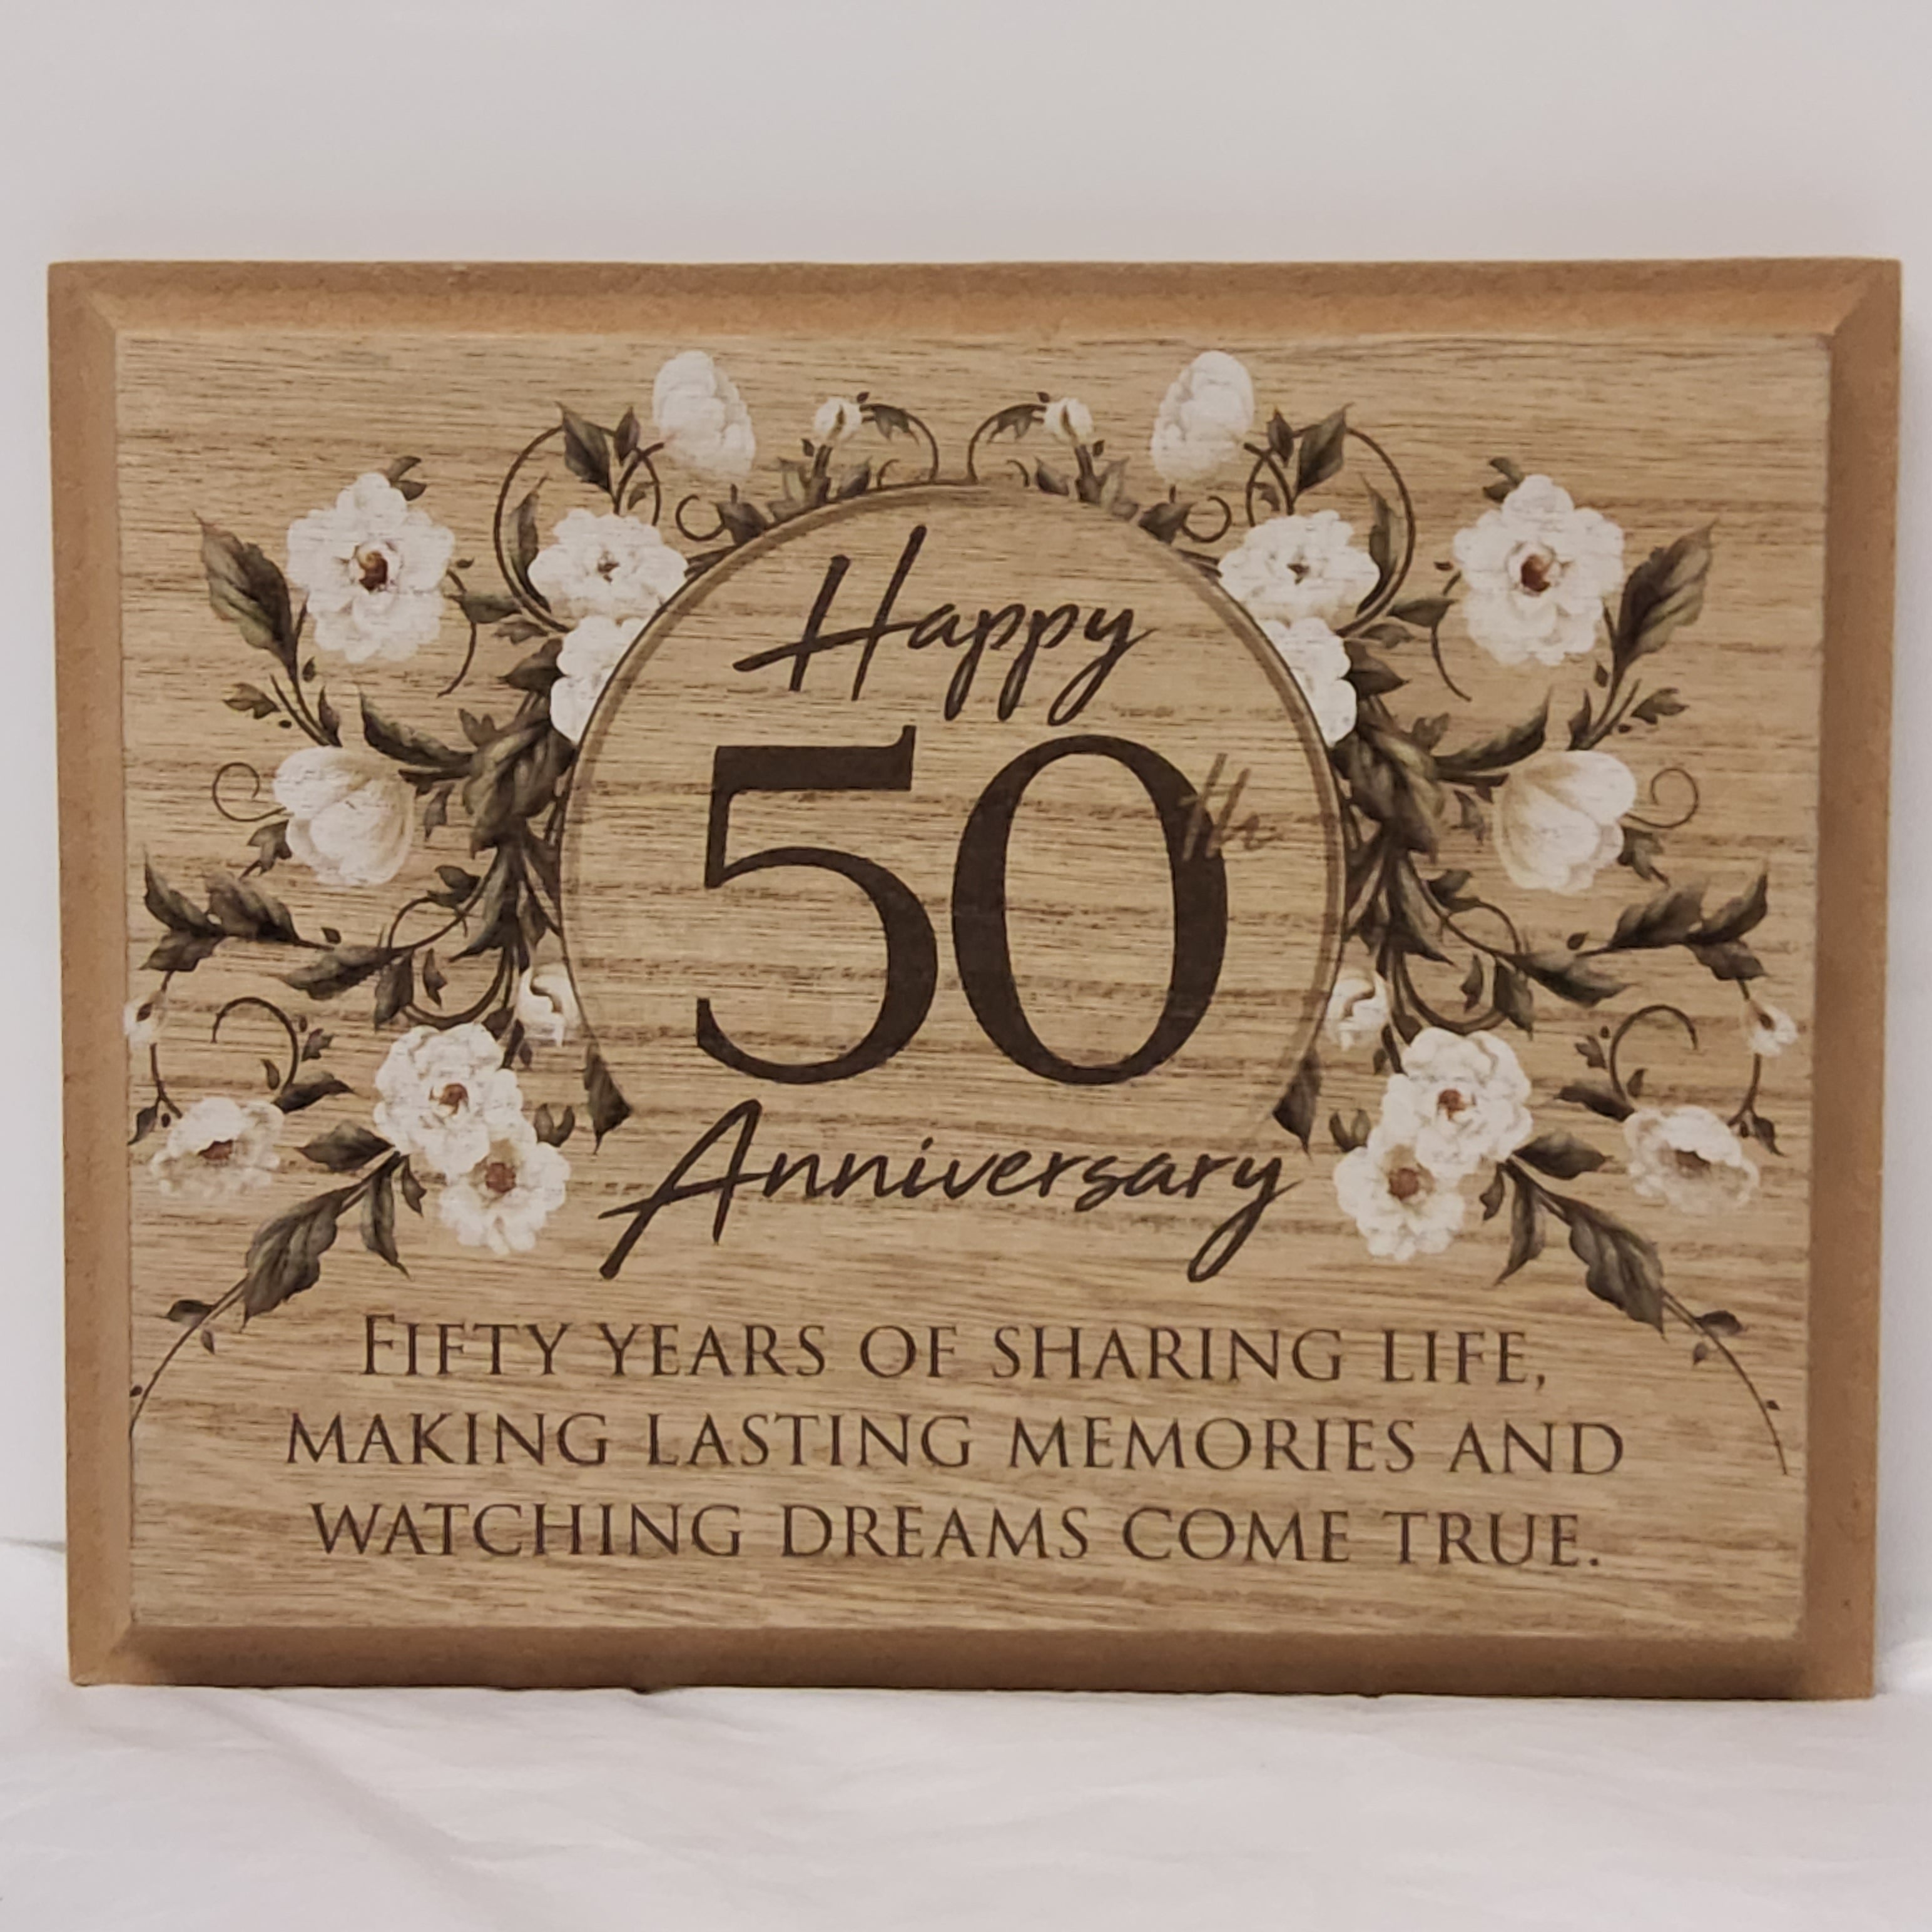 Happy 50th Anniversary - Wood Plaque CS25158